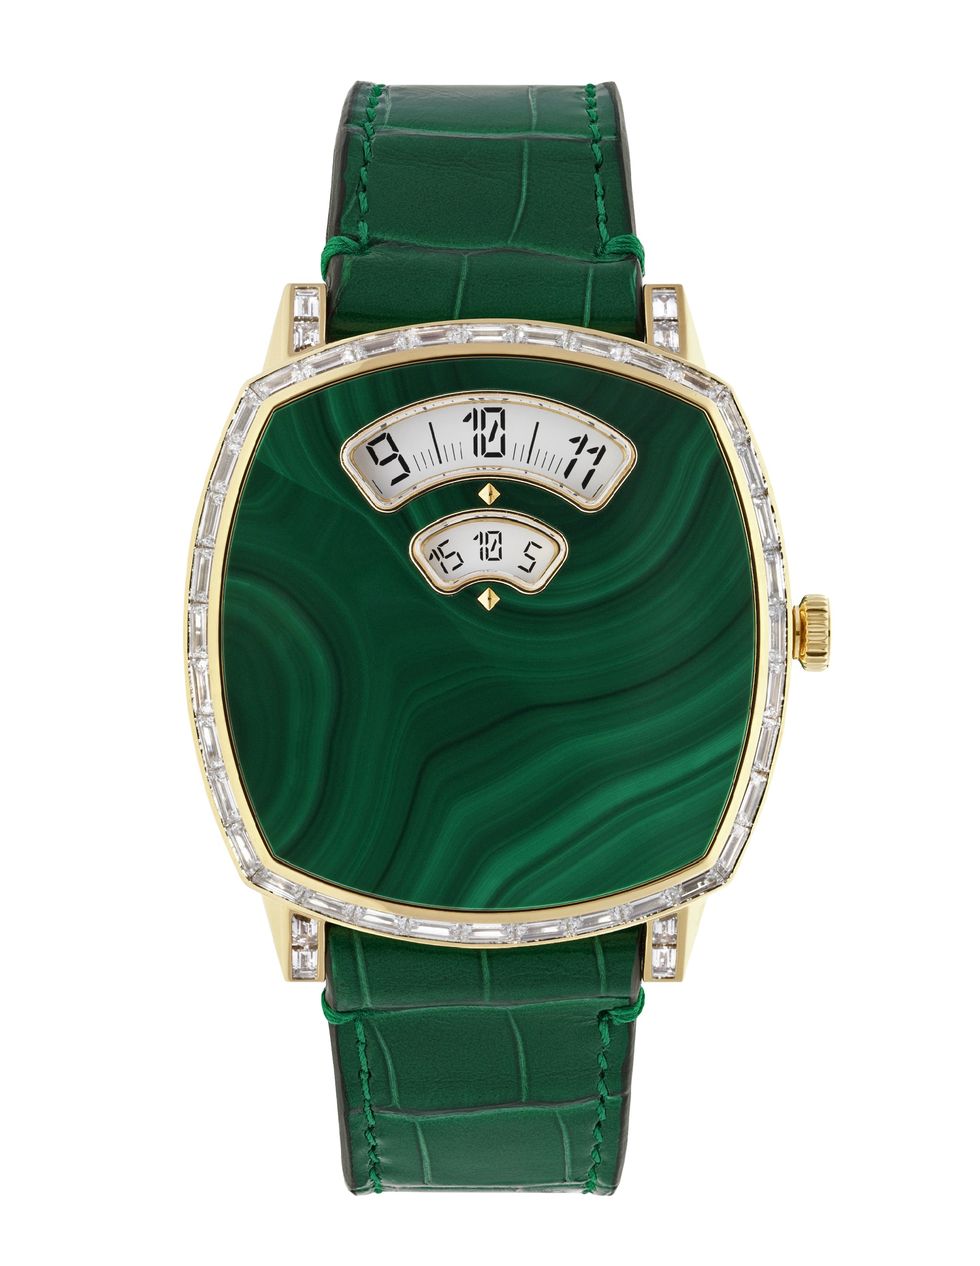 手錶錶盤綠色大熱門！「pp金鷹 x tiffany」等18款綠色錶面手錶盤點